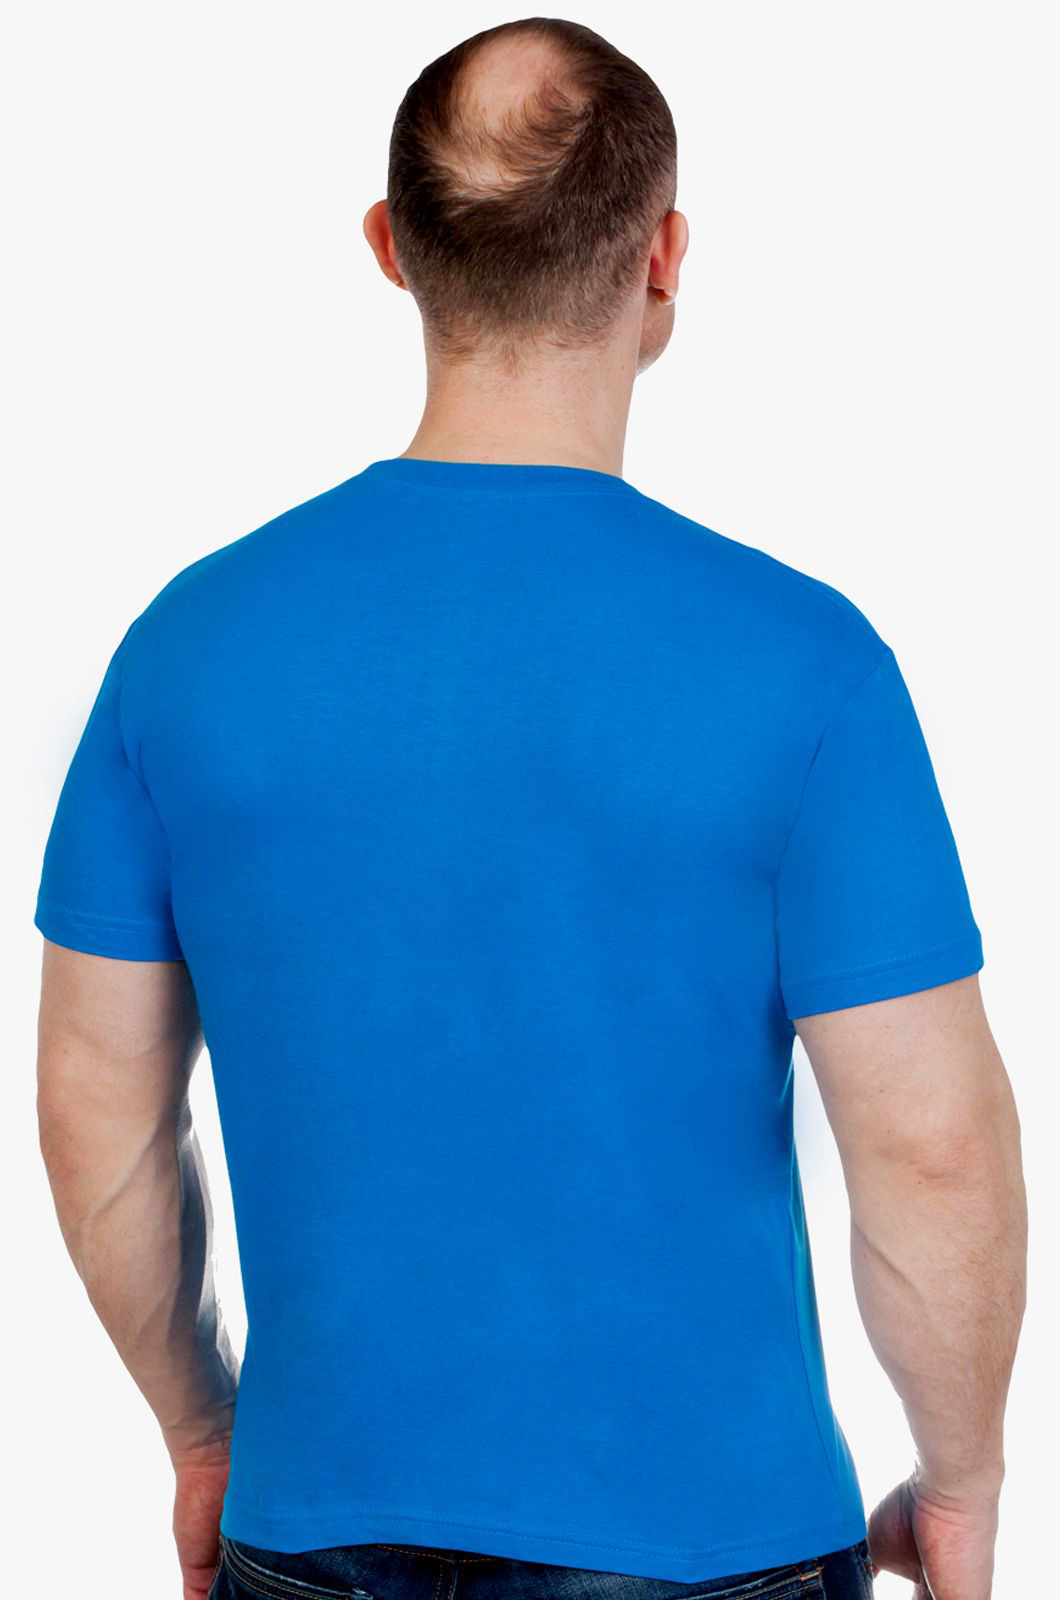 Купить мужскую синюю футболку Россия с доставкой или самовывозом